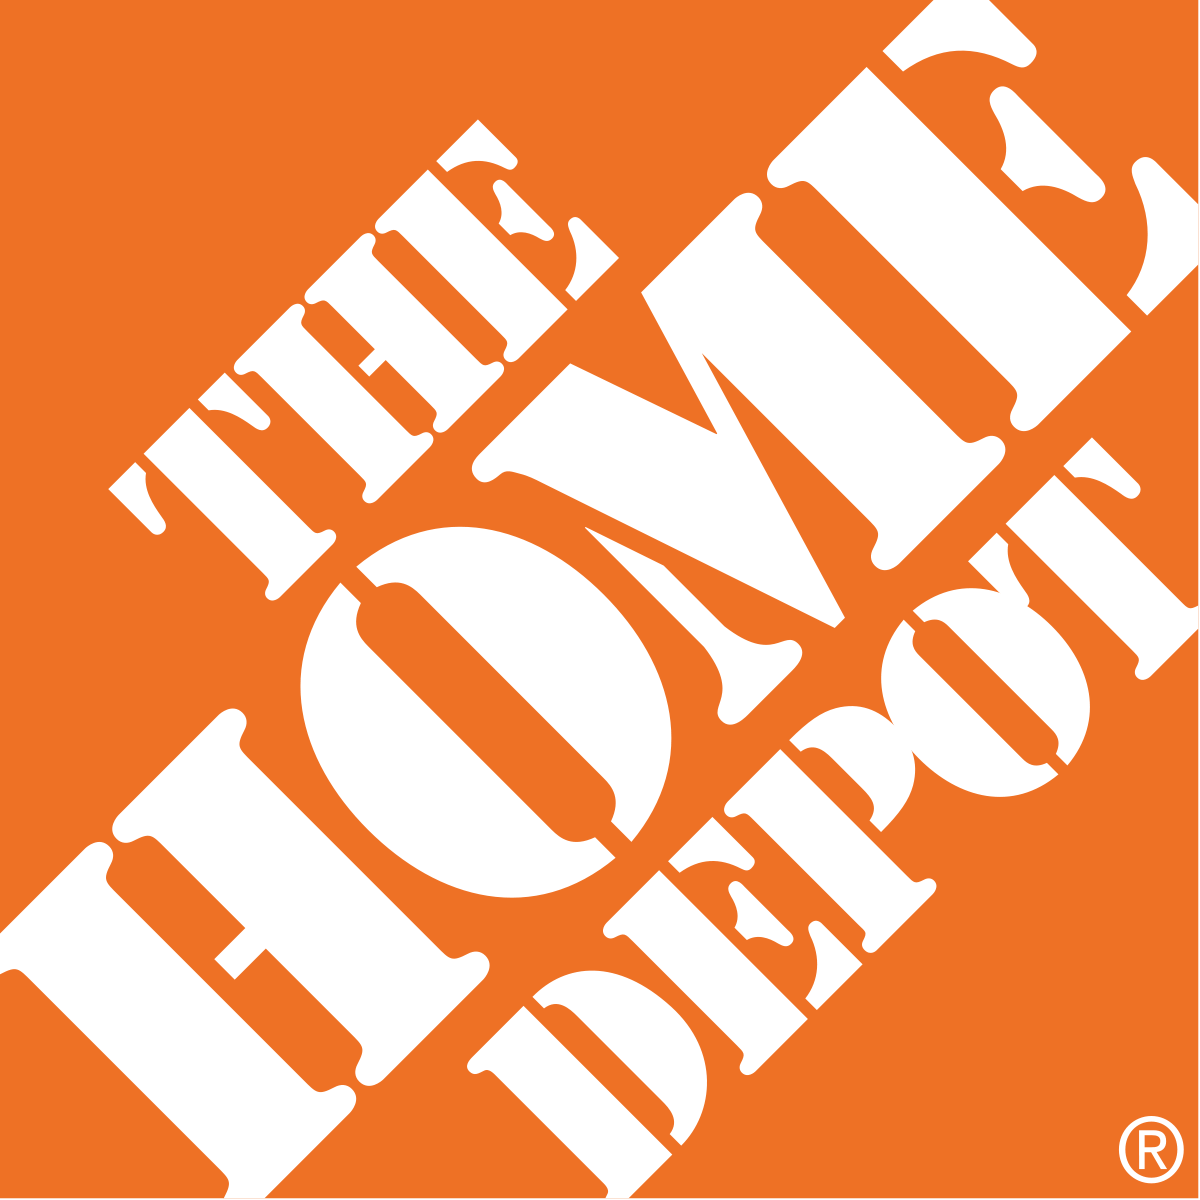 Home Depot Logo - The Home Depot